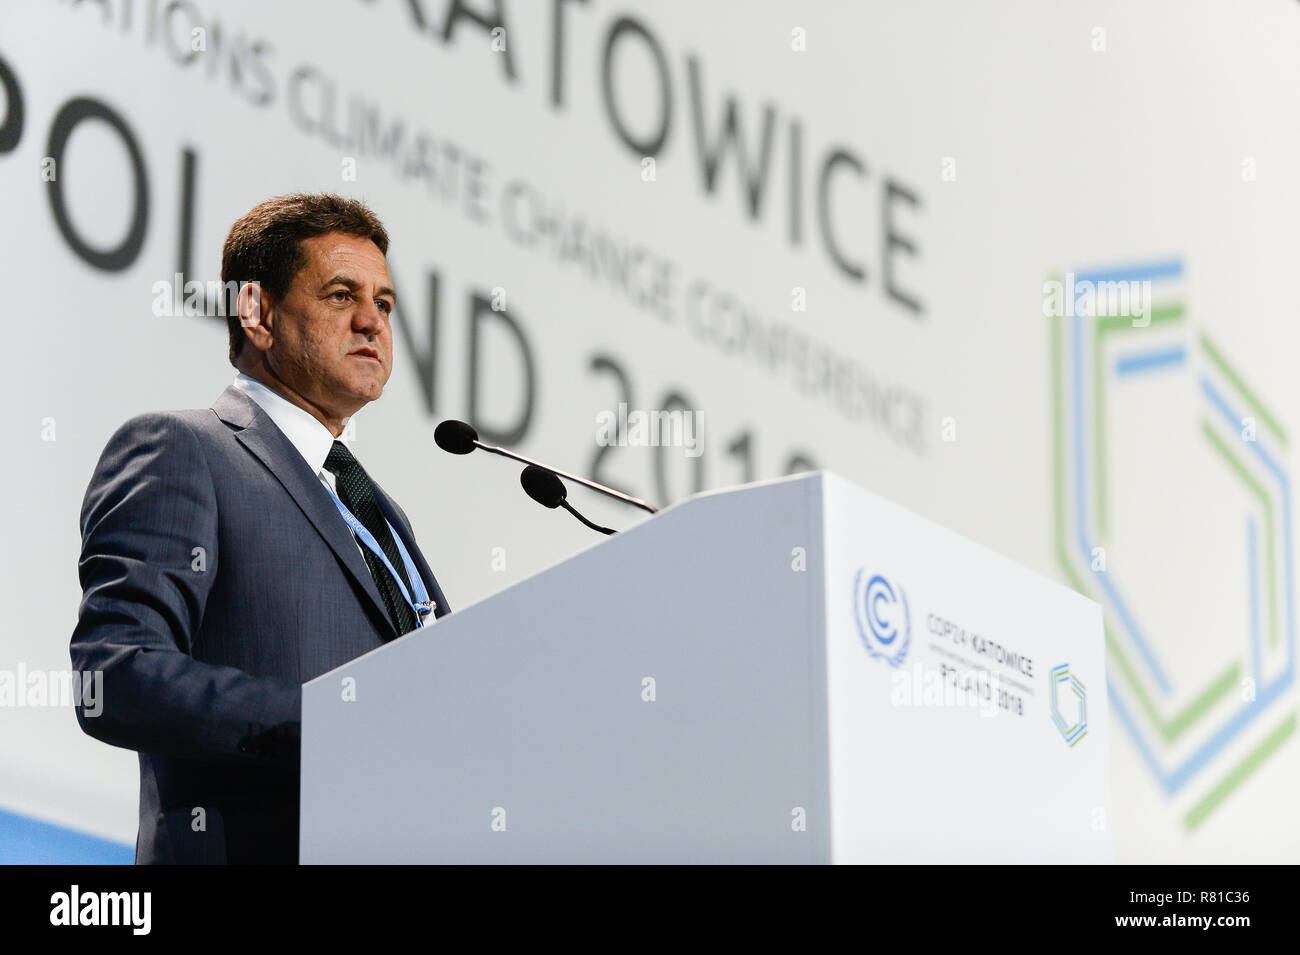 Edson Goncalves de Duarte, Ministre de l'environnement du Brésil a vu au cours de la deuxième partie de la réunion de haut niveau lors de la COP24 Conférence des Nations Unies sur les changements climatiques 2018. Banque D'Images